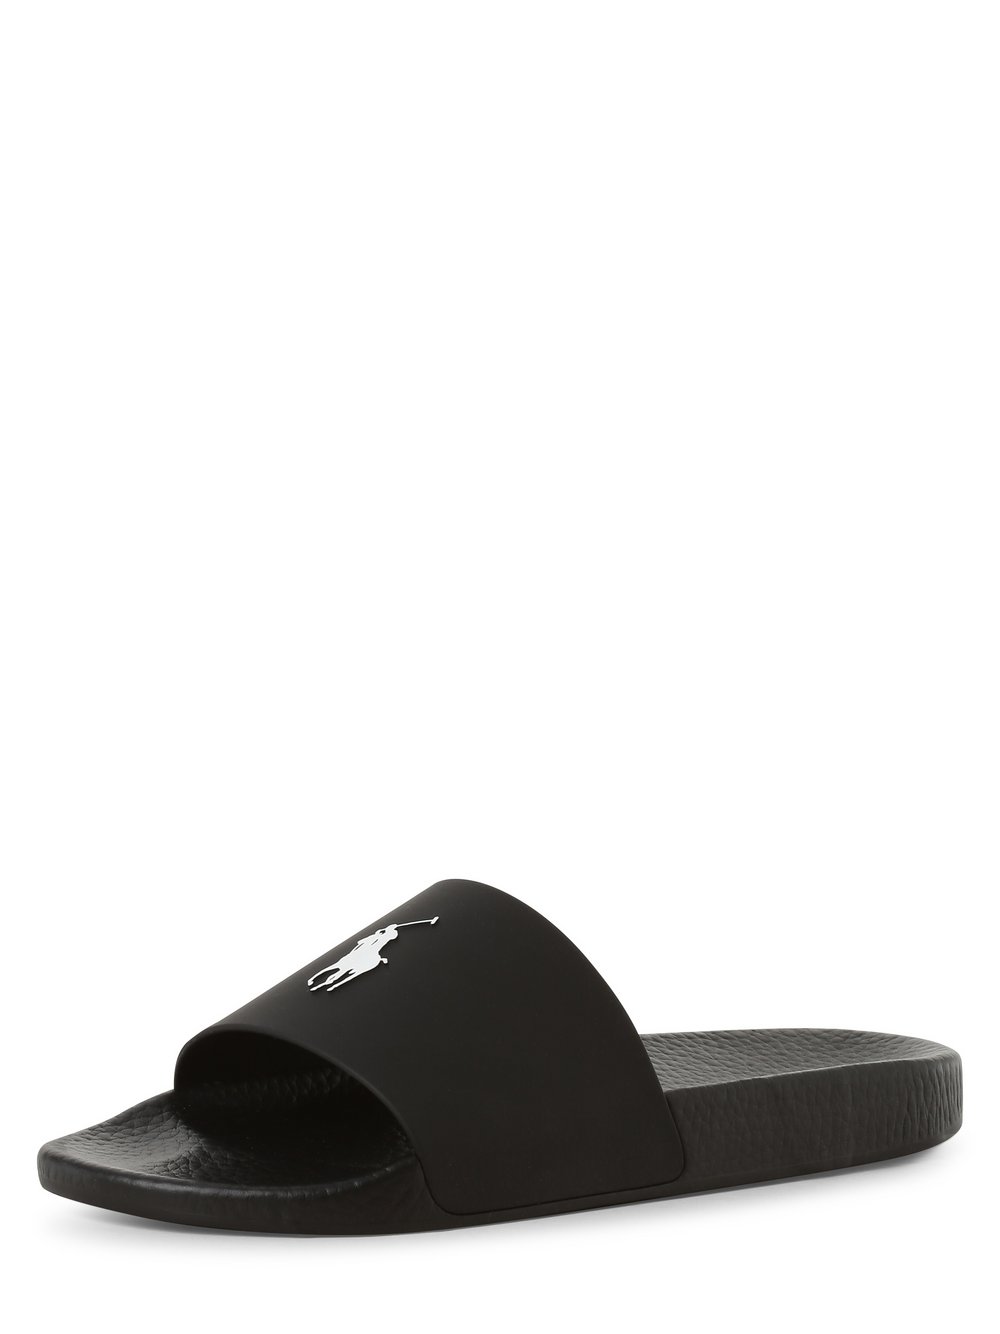 Polo Ralph Lauren - Męskie pantofle kąpielowe, czarny